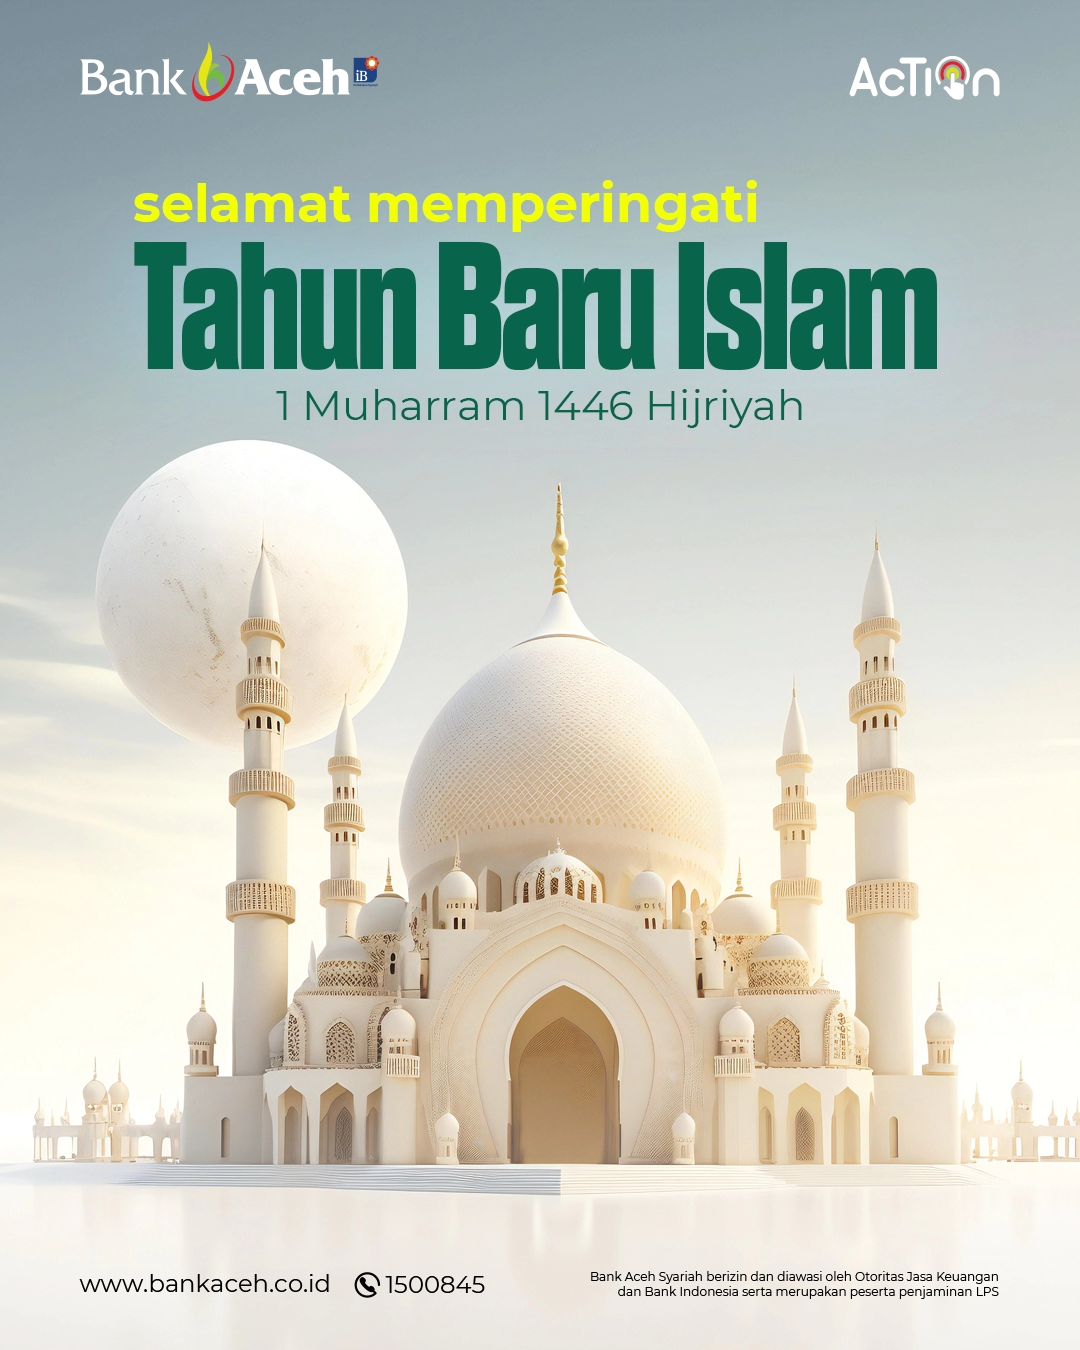 Selamat Memperingati Tahun Baru Islam 1 Muharram 1446 Hijriah dari Bank Aceh Syariah